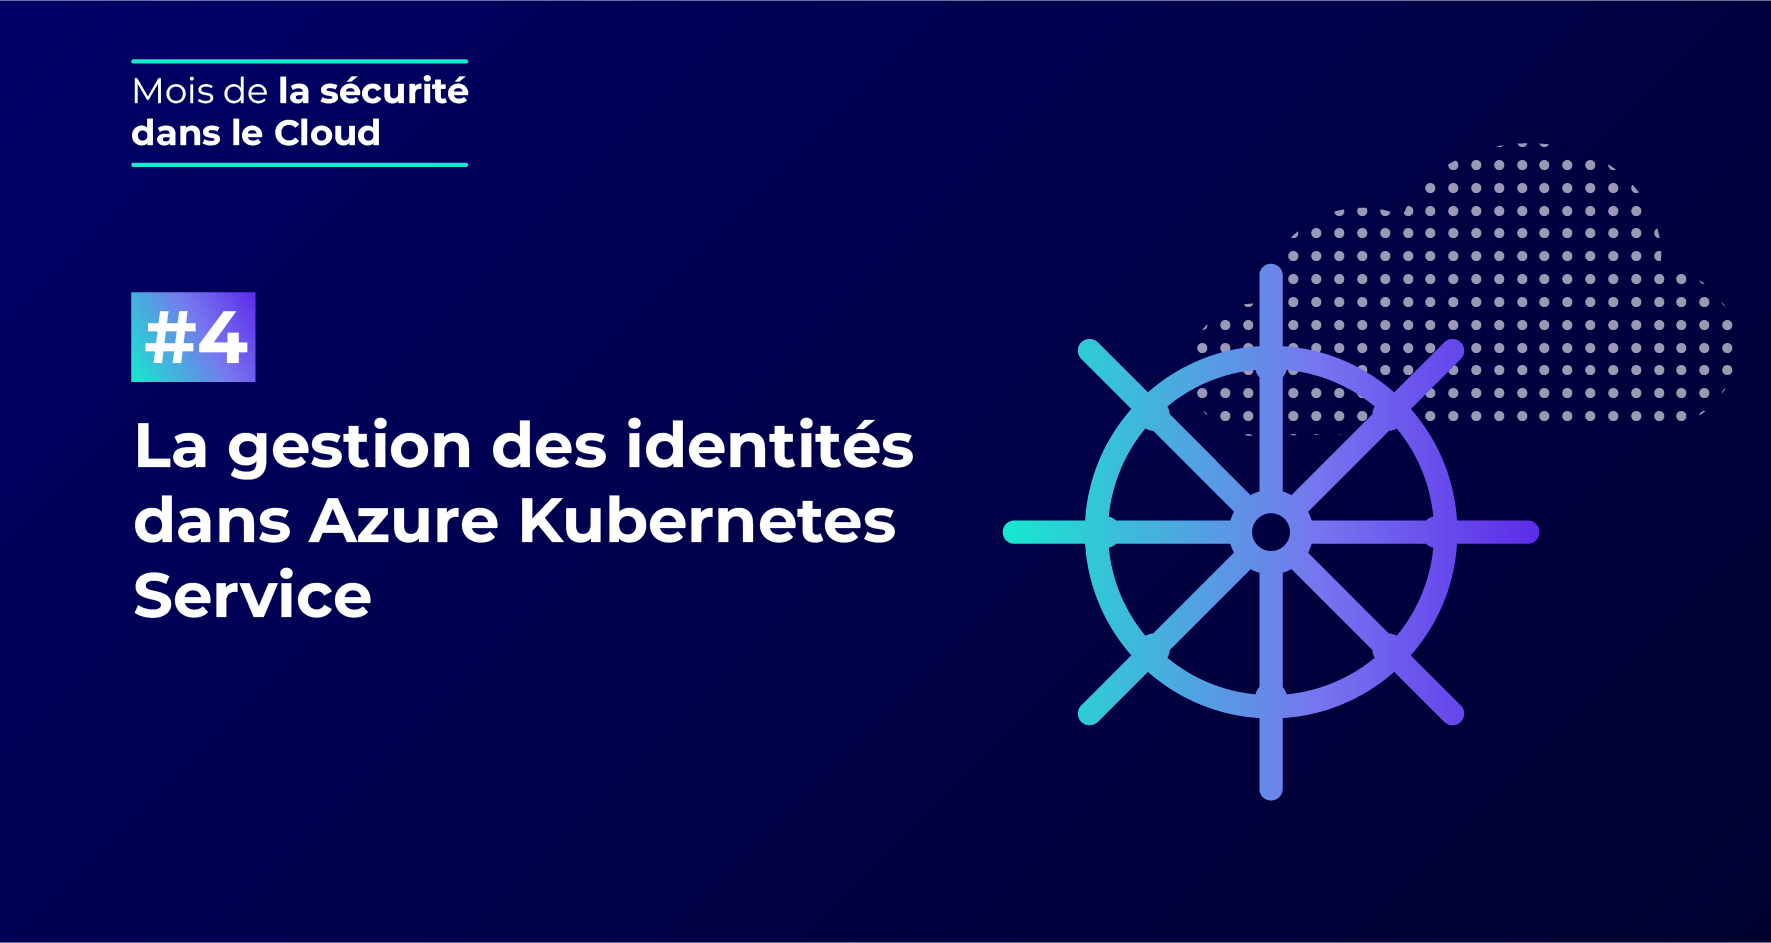 La gestion des identités dans Azure Kubernetes Service (AKS)